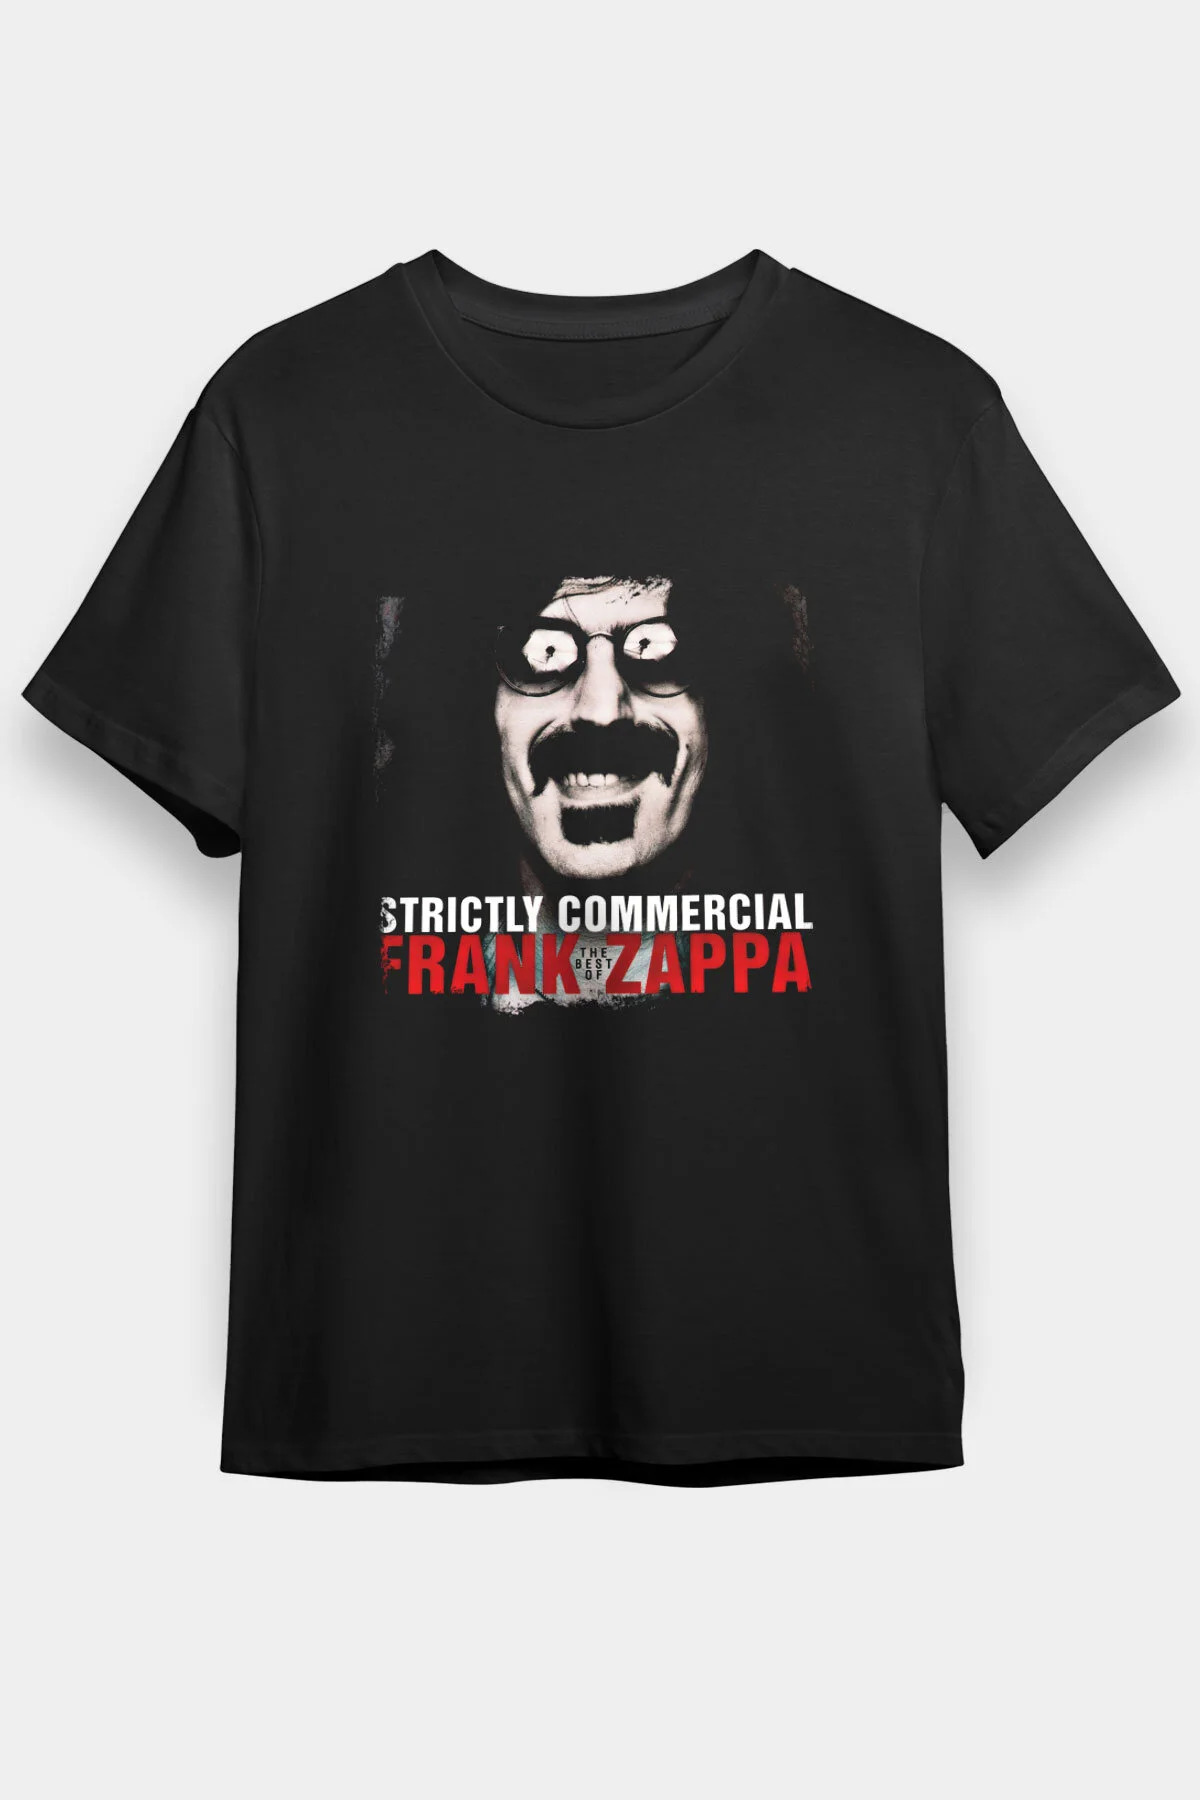 Frank Zappa T shirt , Music Band ,Unisex Tshirt 12